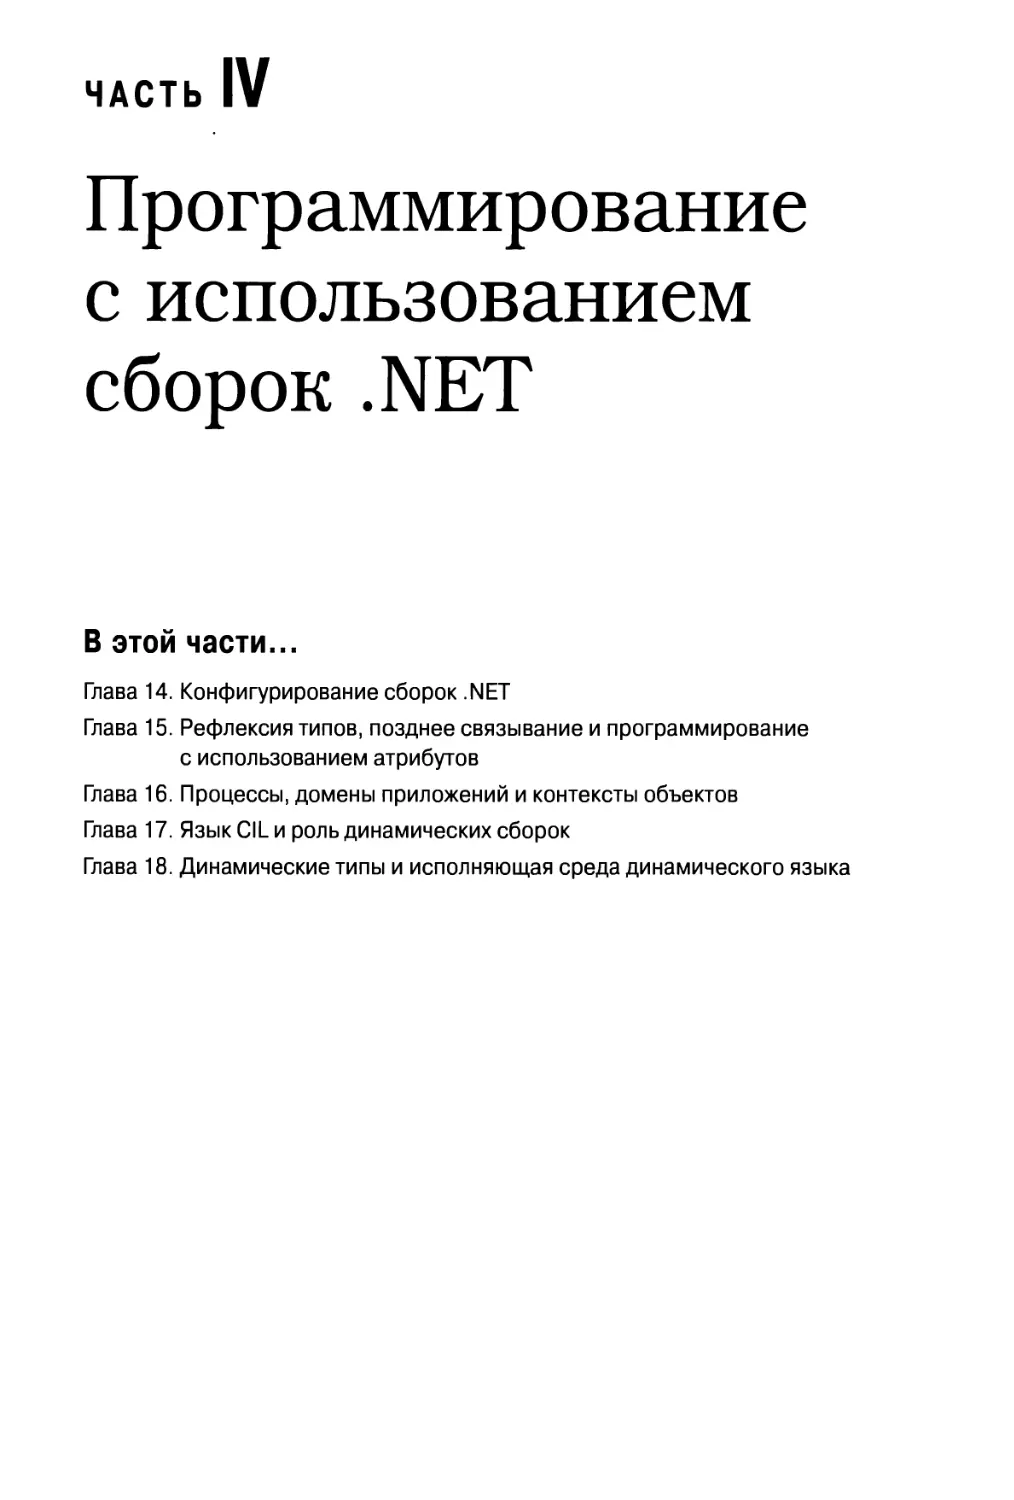 Часть IV. Программирование с использованием сборок .NET